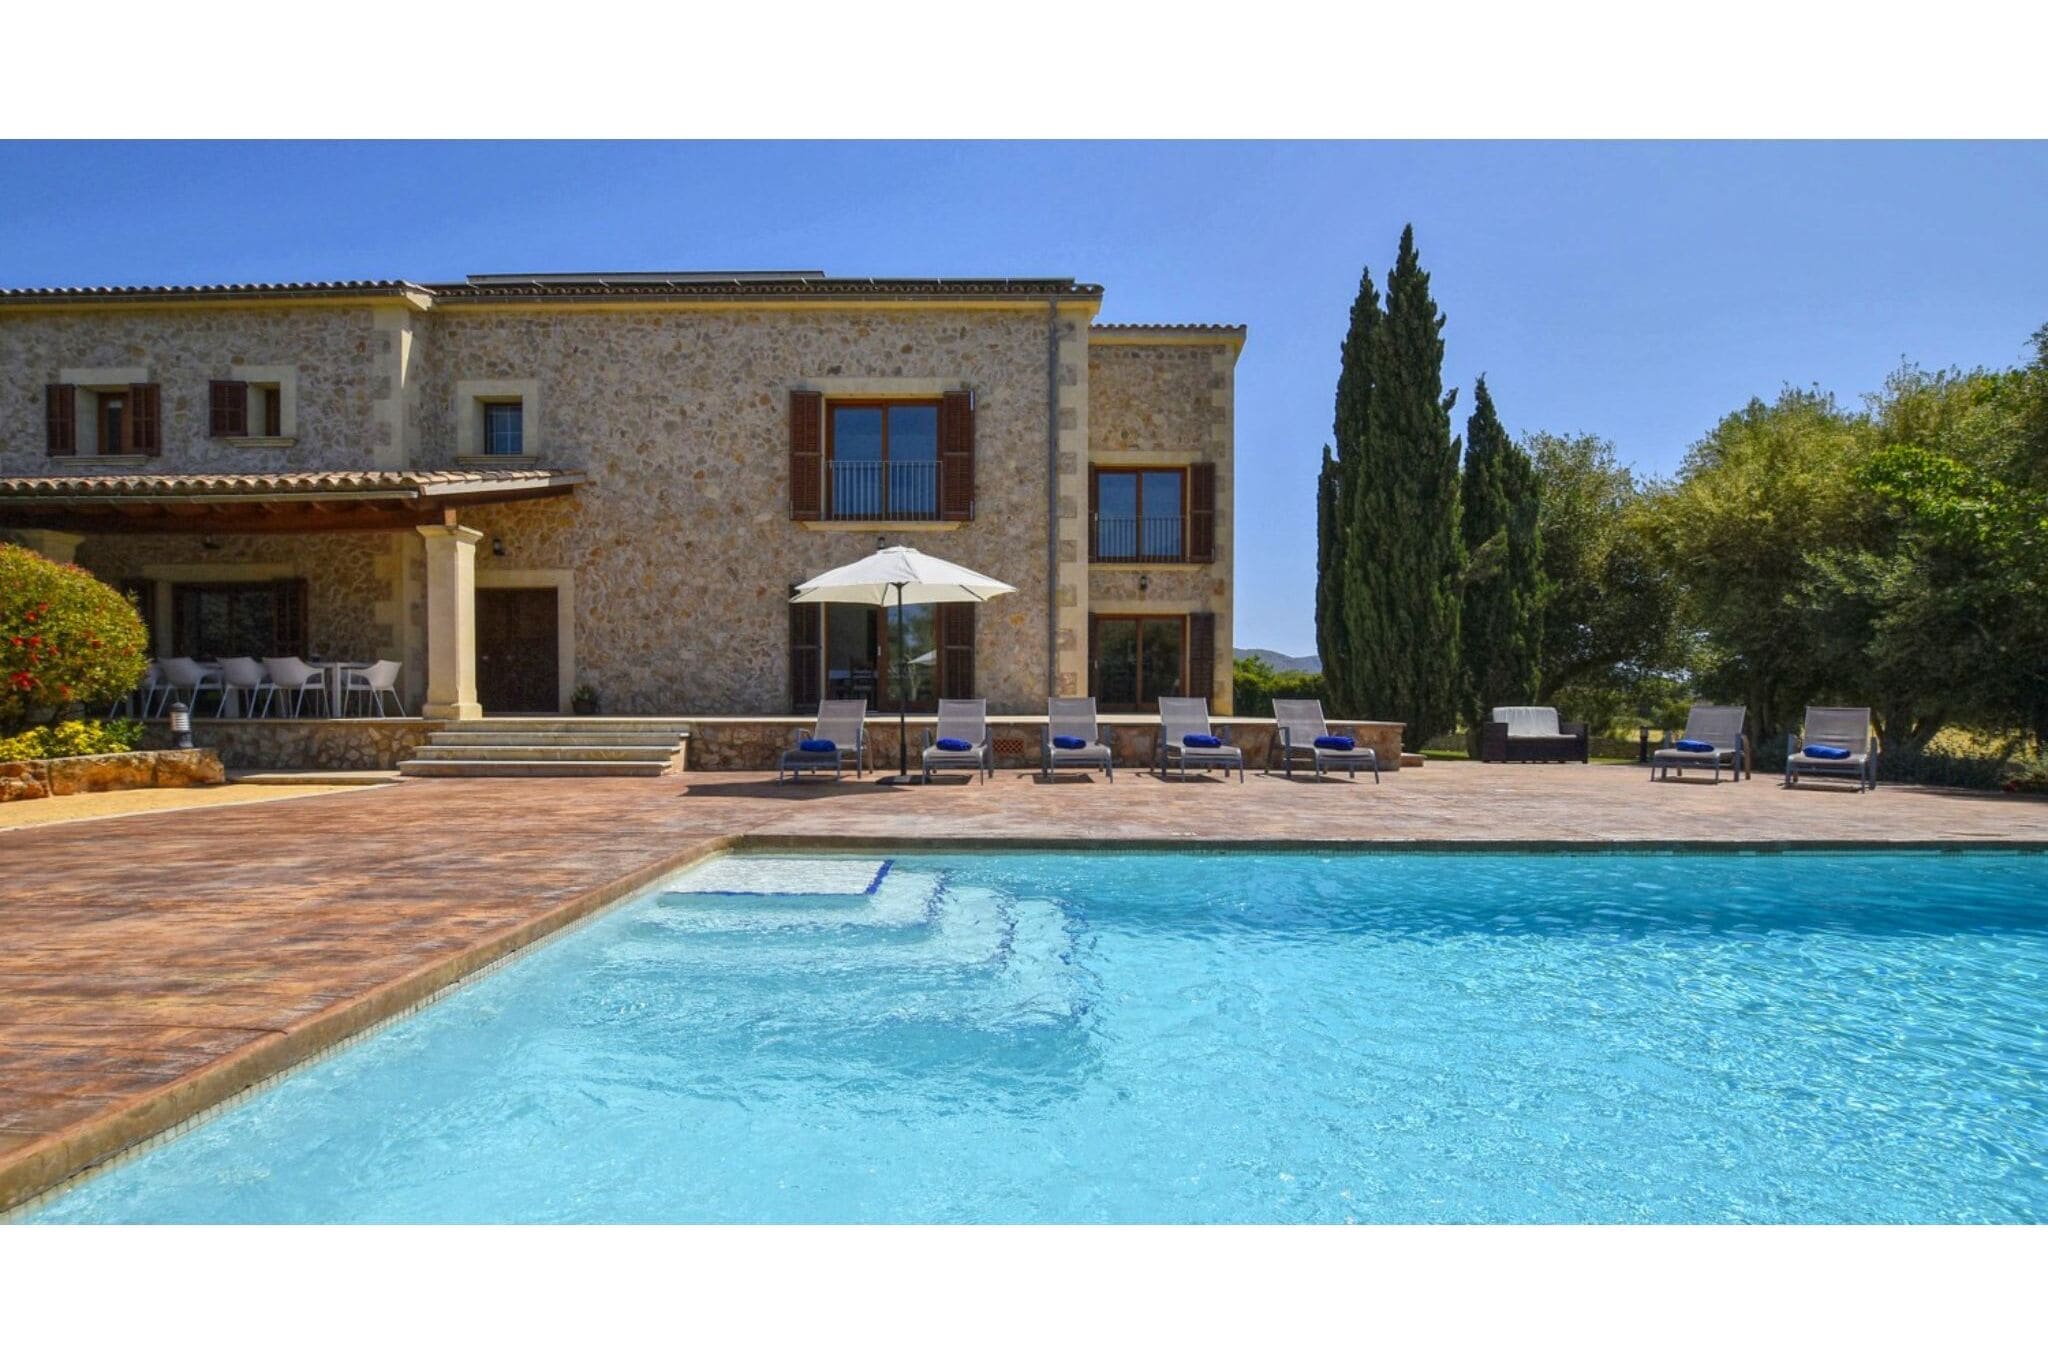 Maison de campagne de luxe avec piscine près de la ville d'Alcudia et de la plage